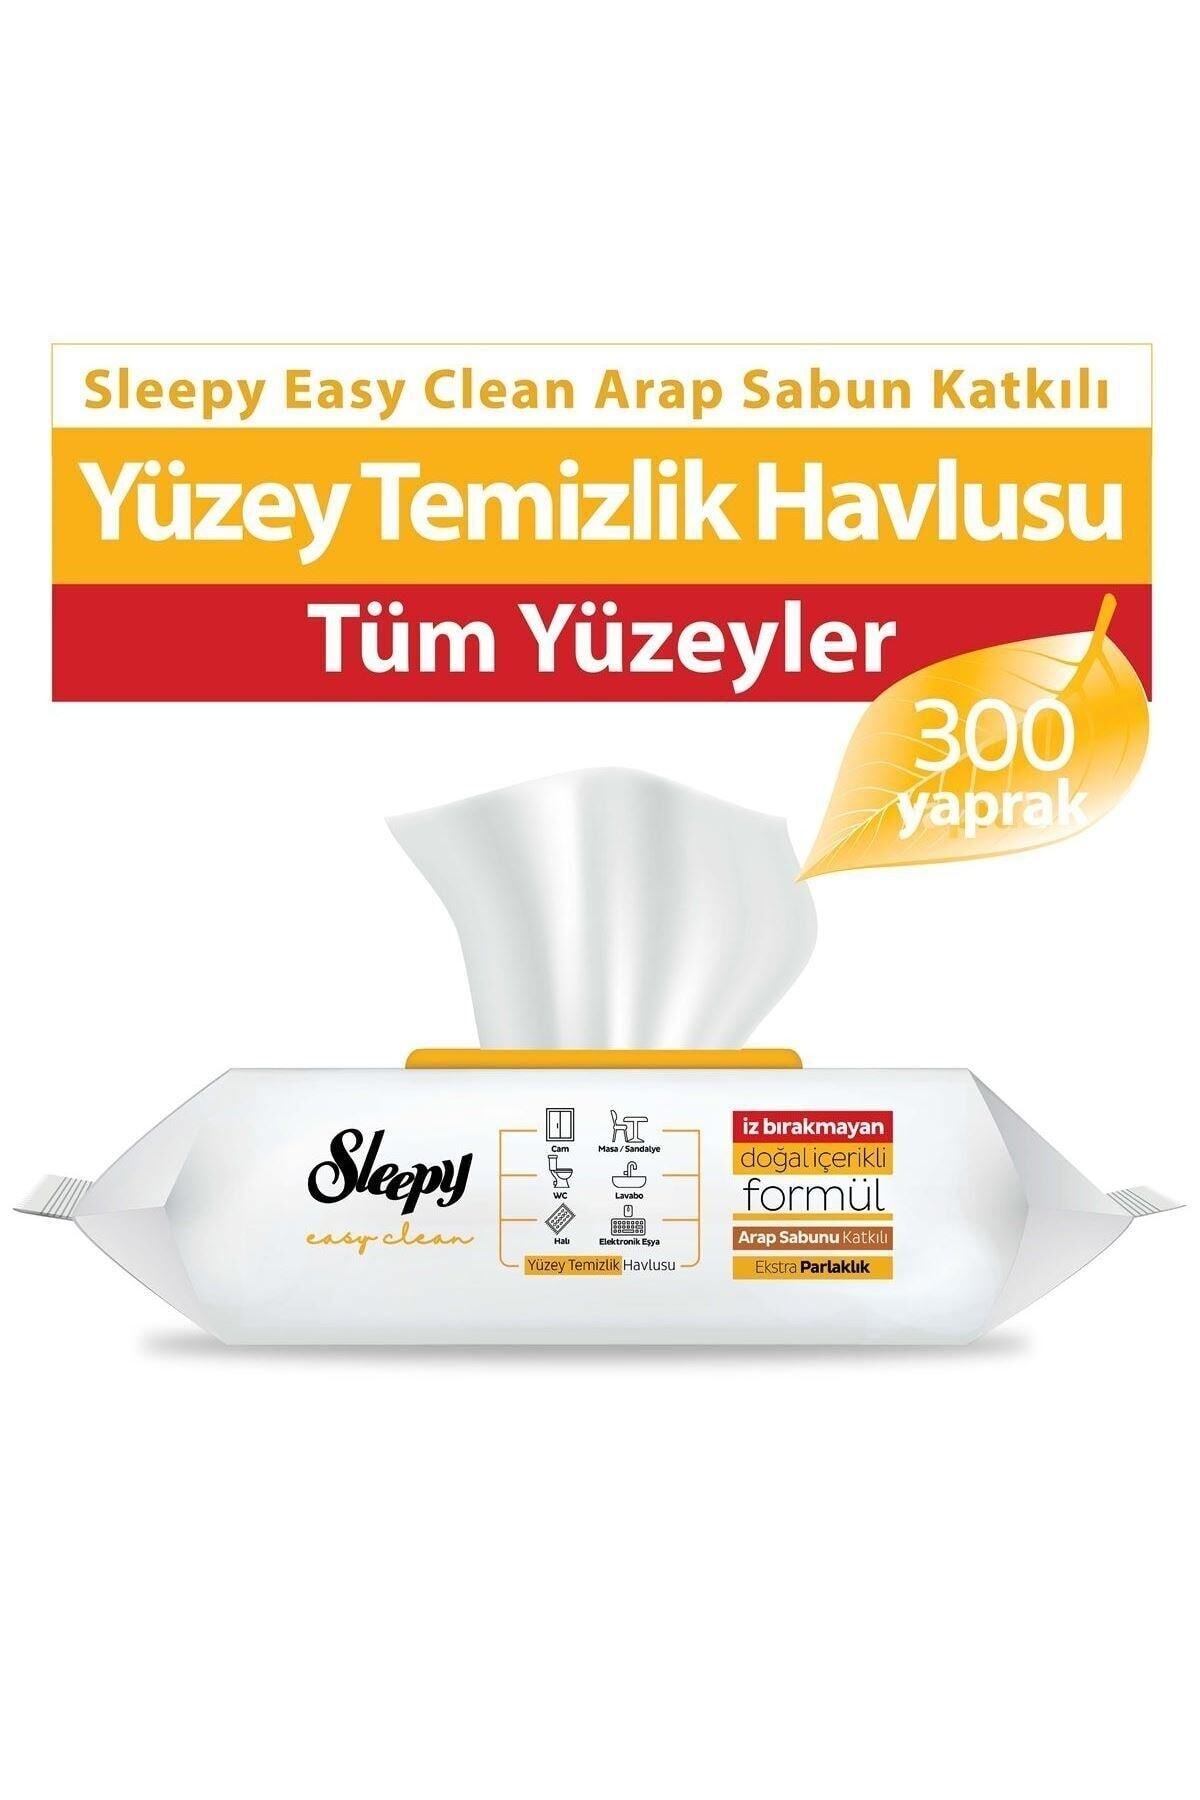 Sleepy Easy Clean Arap Sabunu Katkılı Yüzey Temizlik Havlusu 100 Yaprak 3'lü